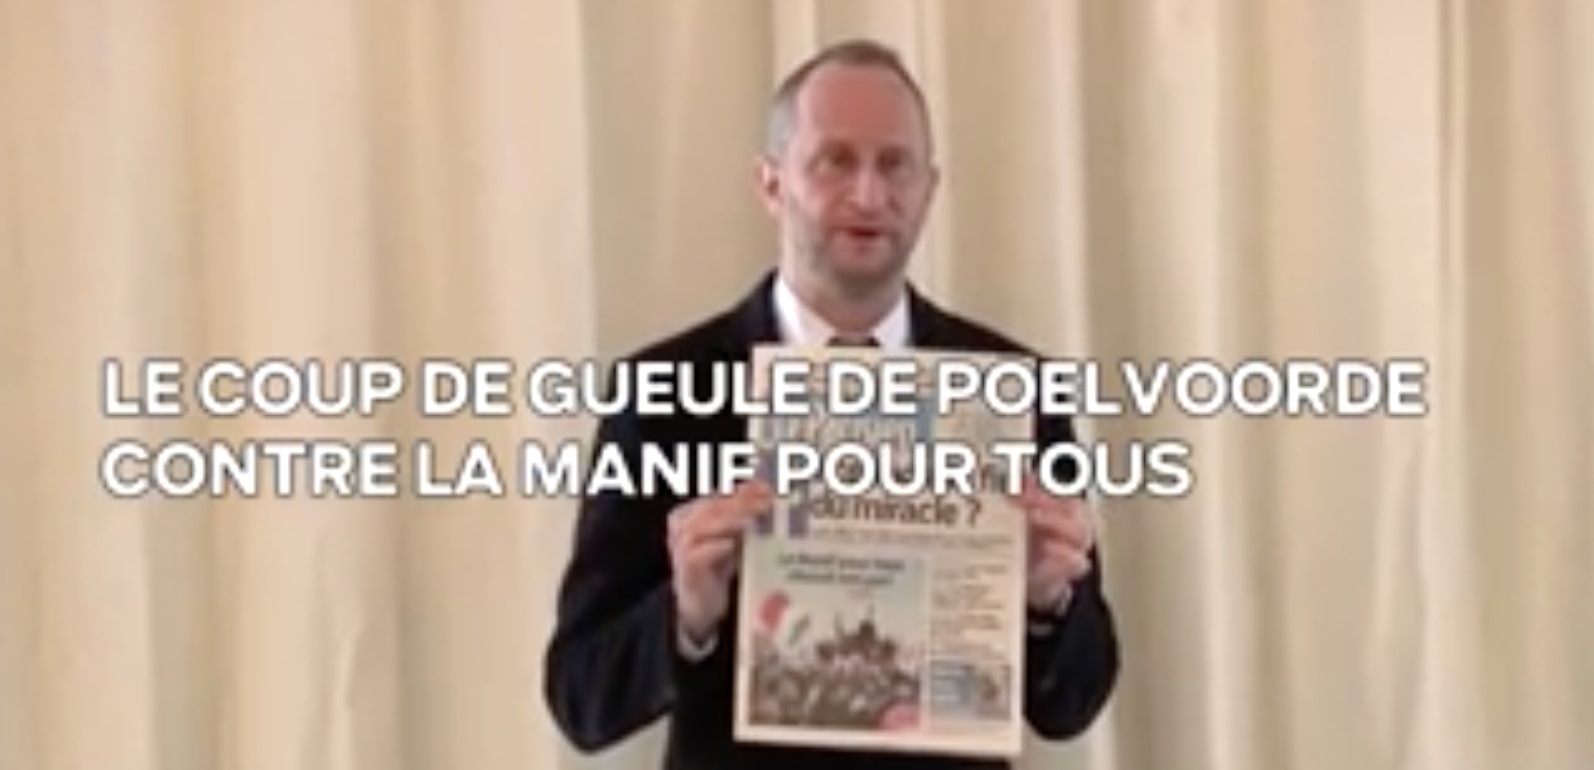 Video Benoit Poelvoorde Manif pour tous